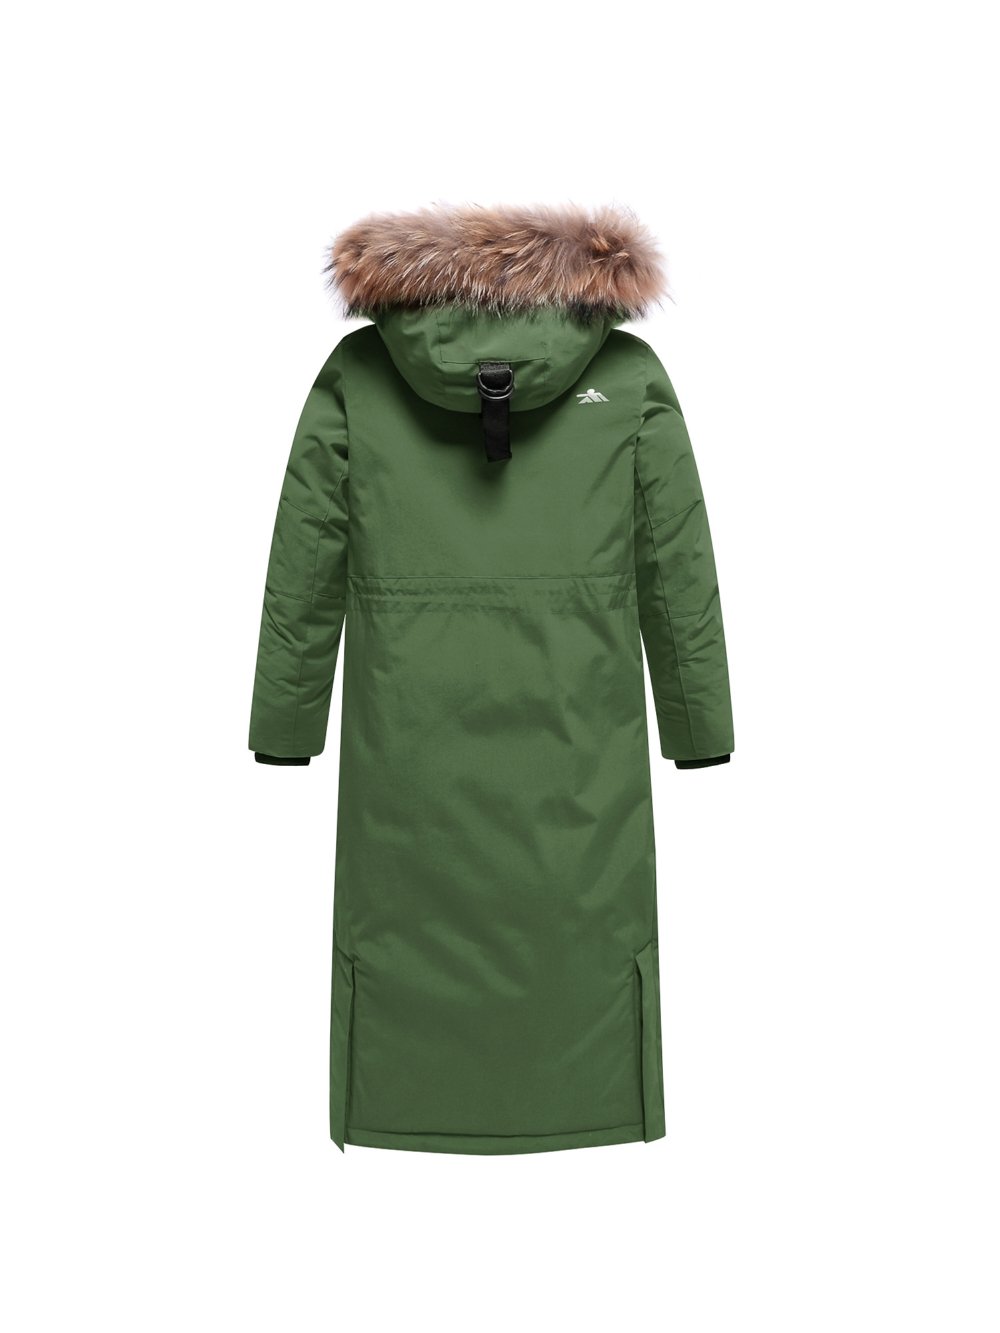 Купить куртку парку для девочки оптом от производителя недорого в Москве 9344TZ 1